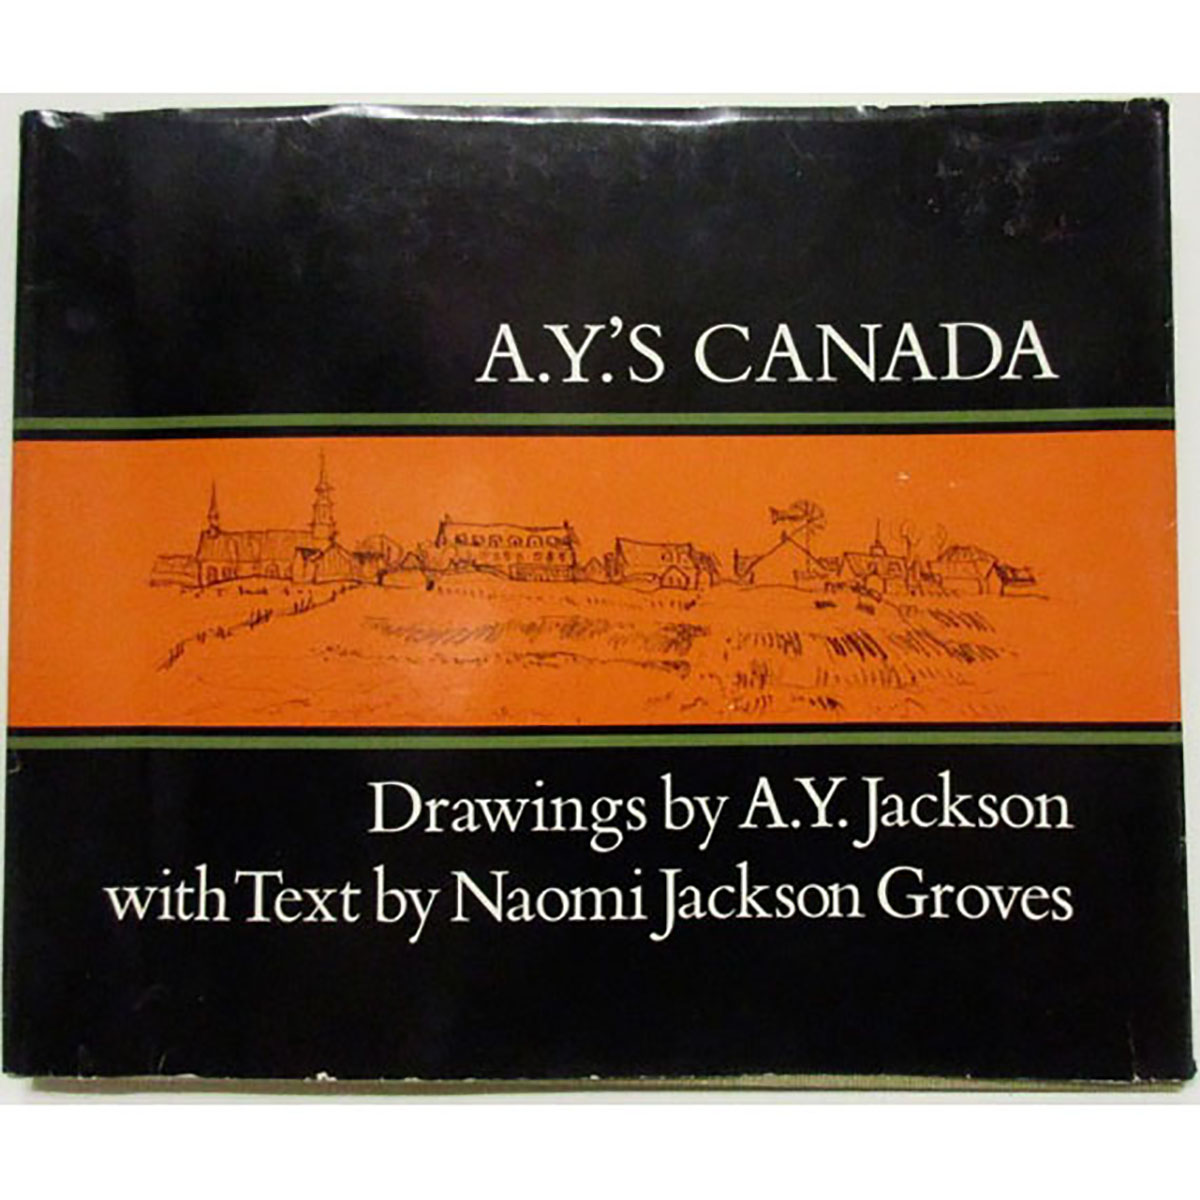 ALEXANDER YOUNG JACKSON (CANADIAN, 1882-1974)